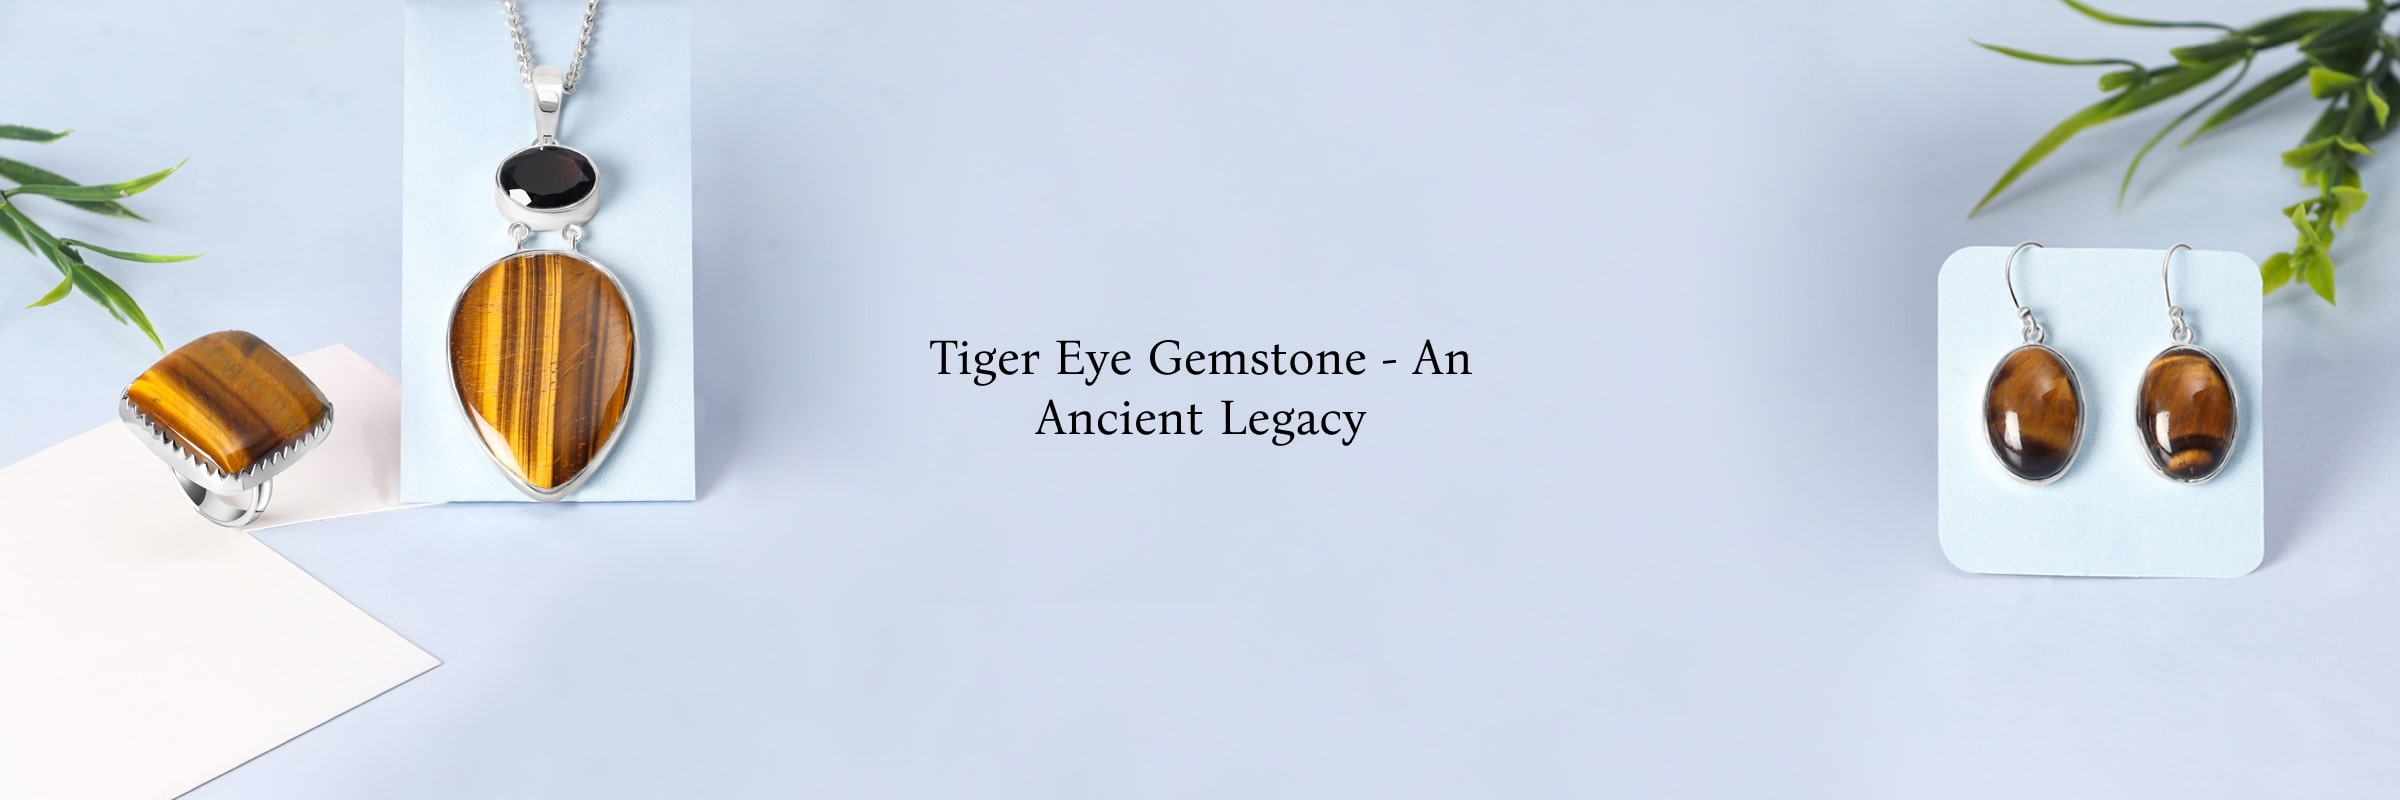 History of Tiger Eye Gemstone